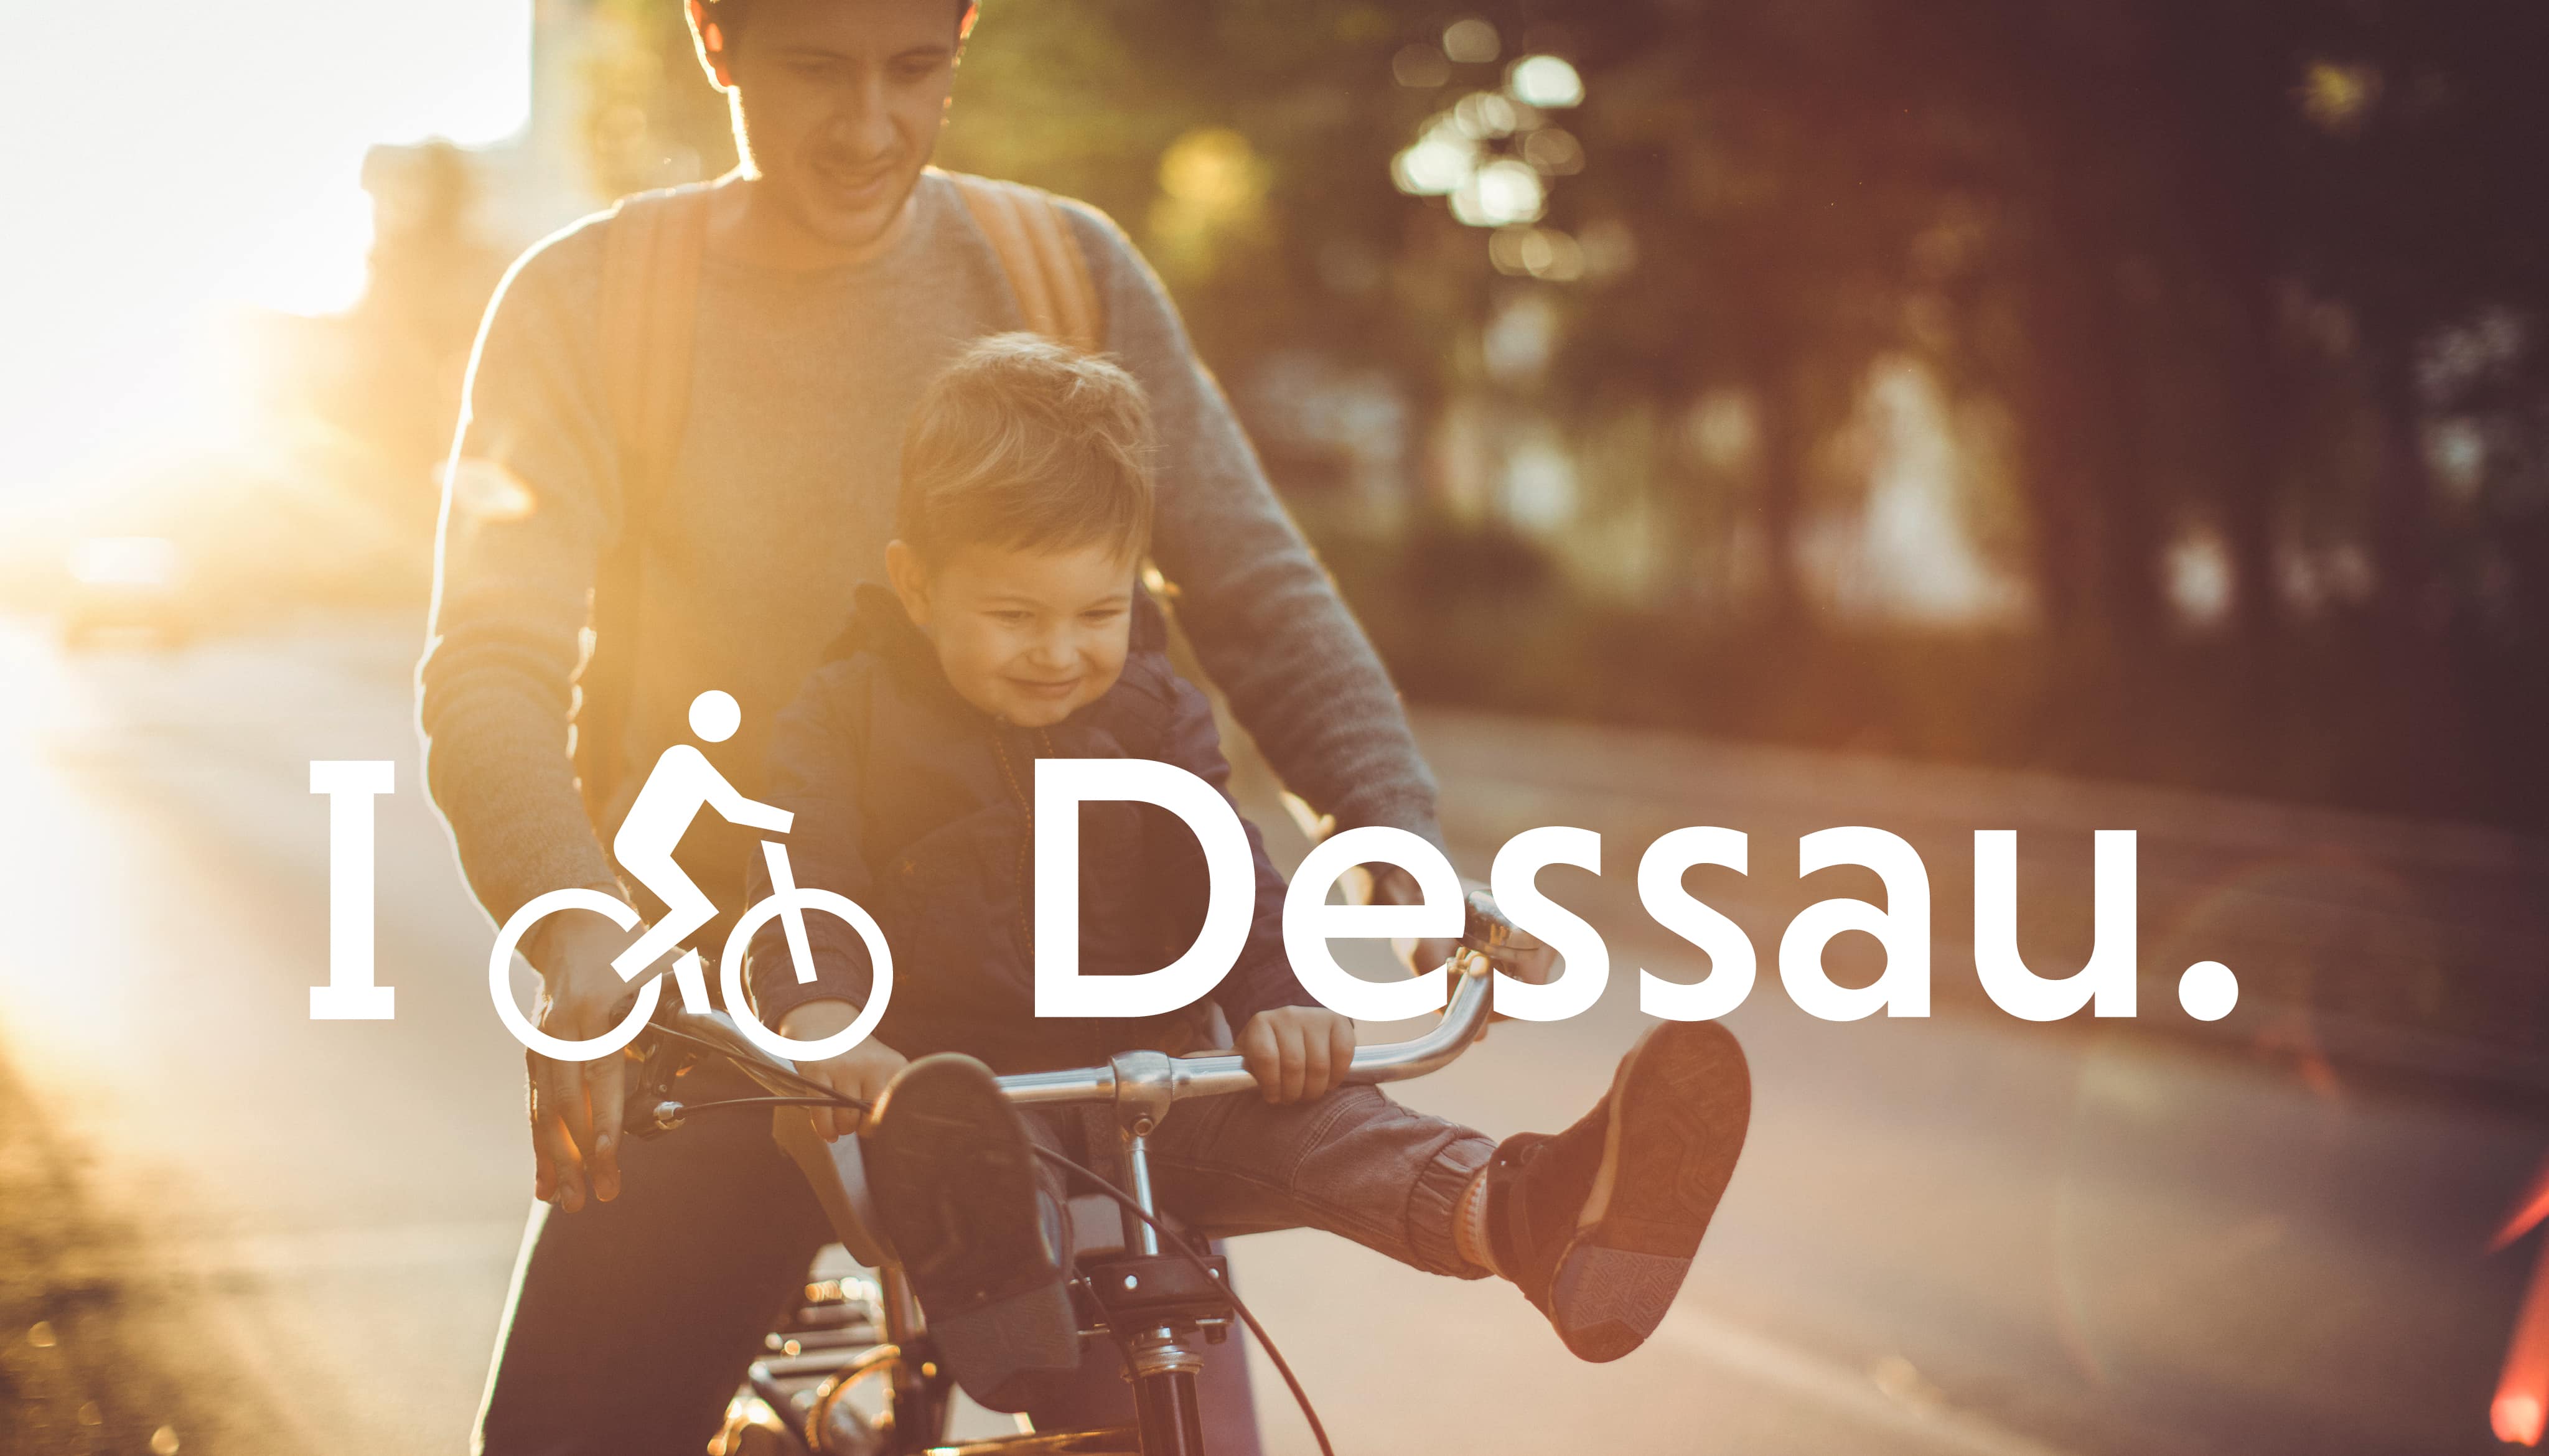 Radfahrer mit "I bike Dessau" Logo